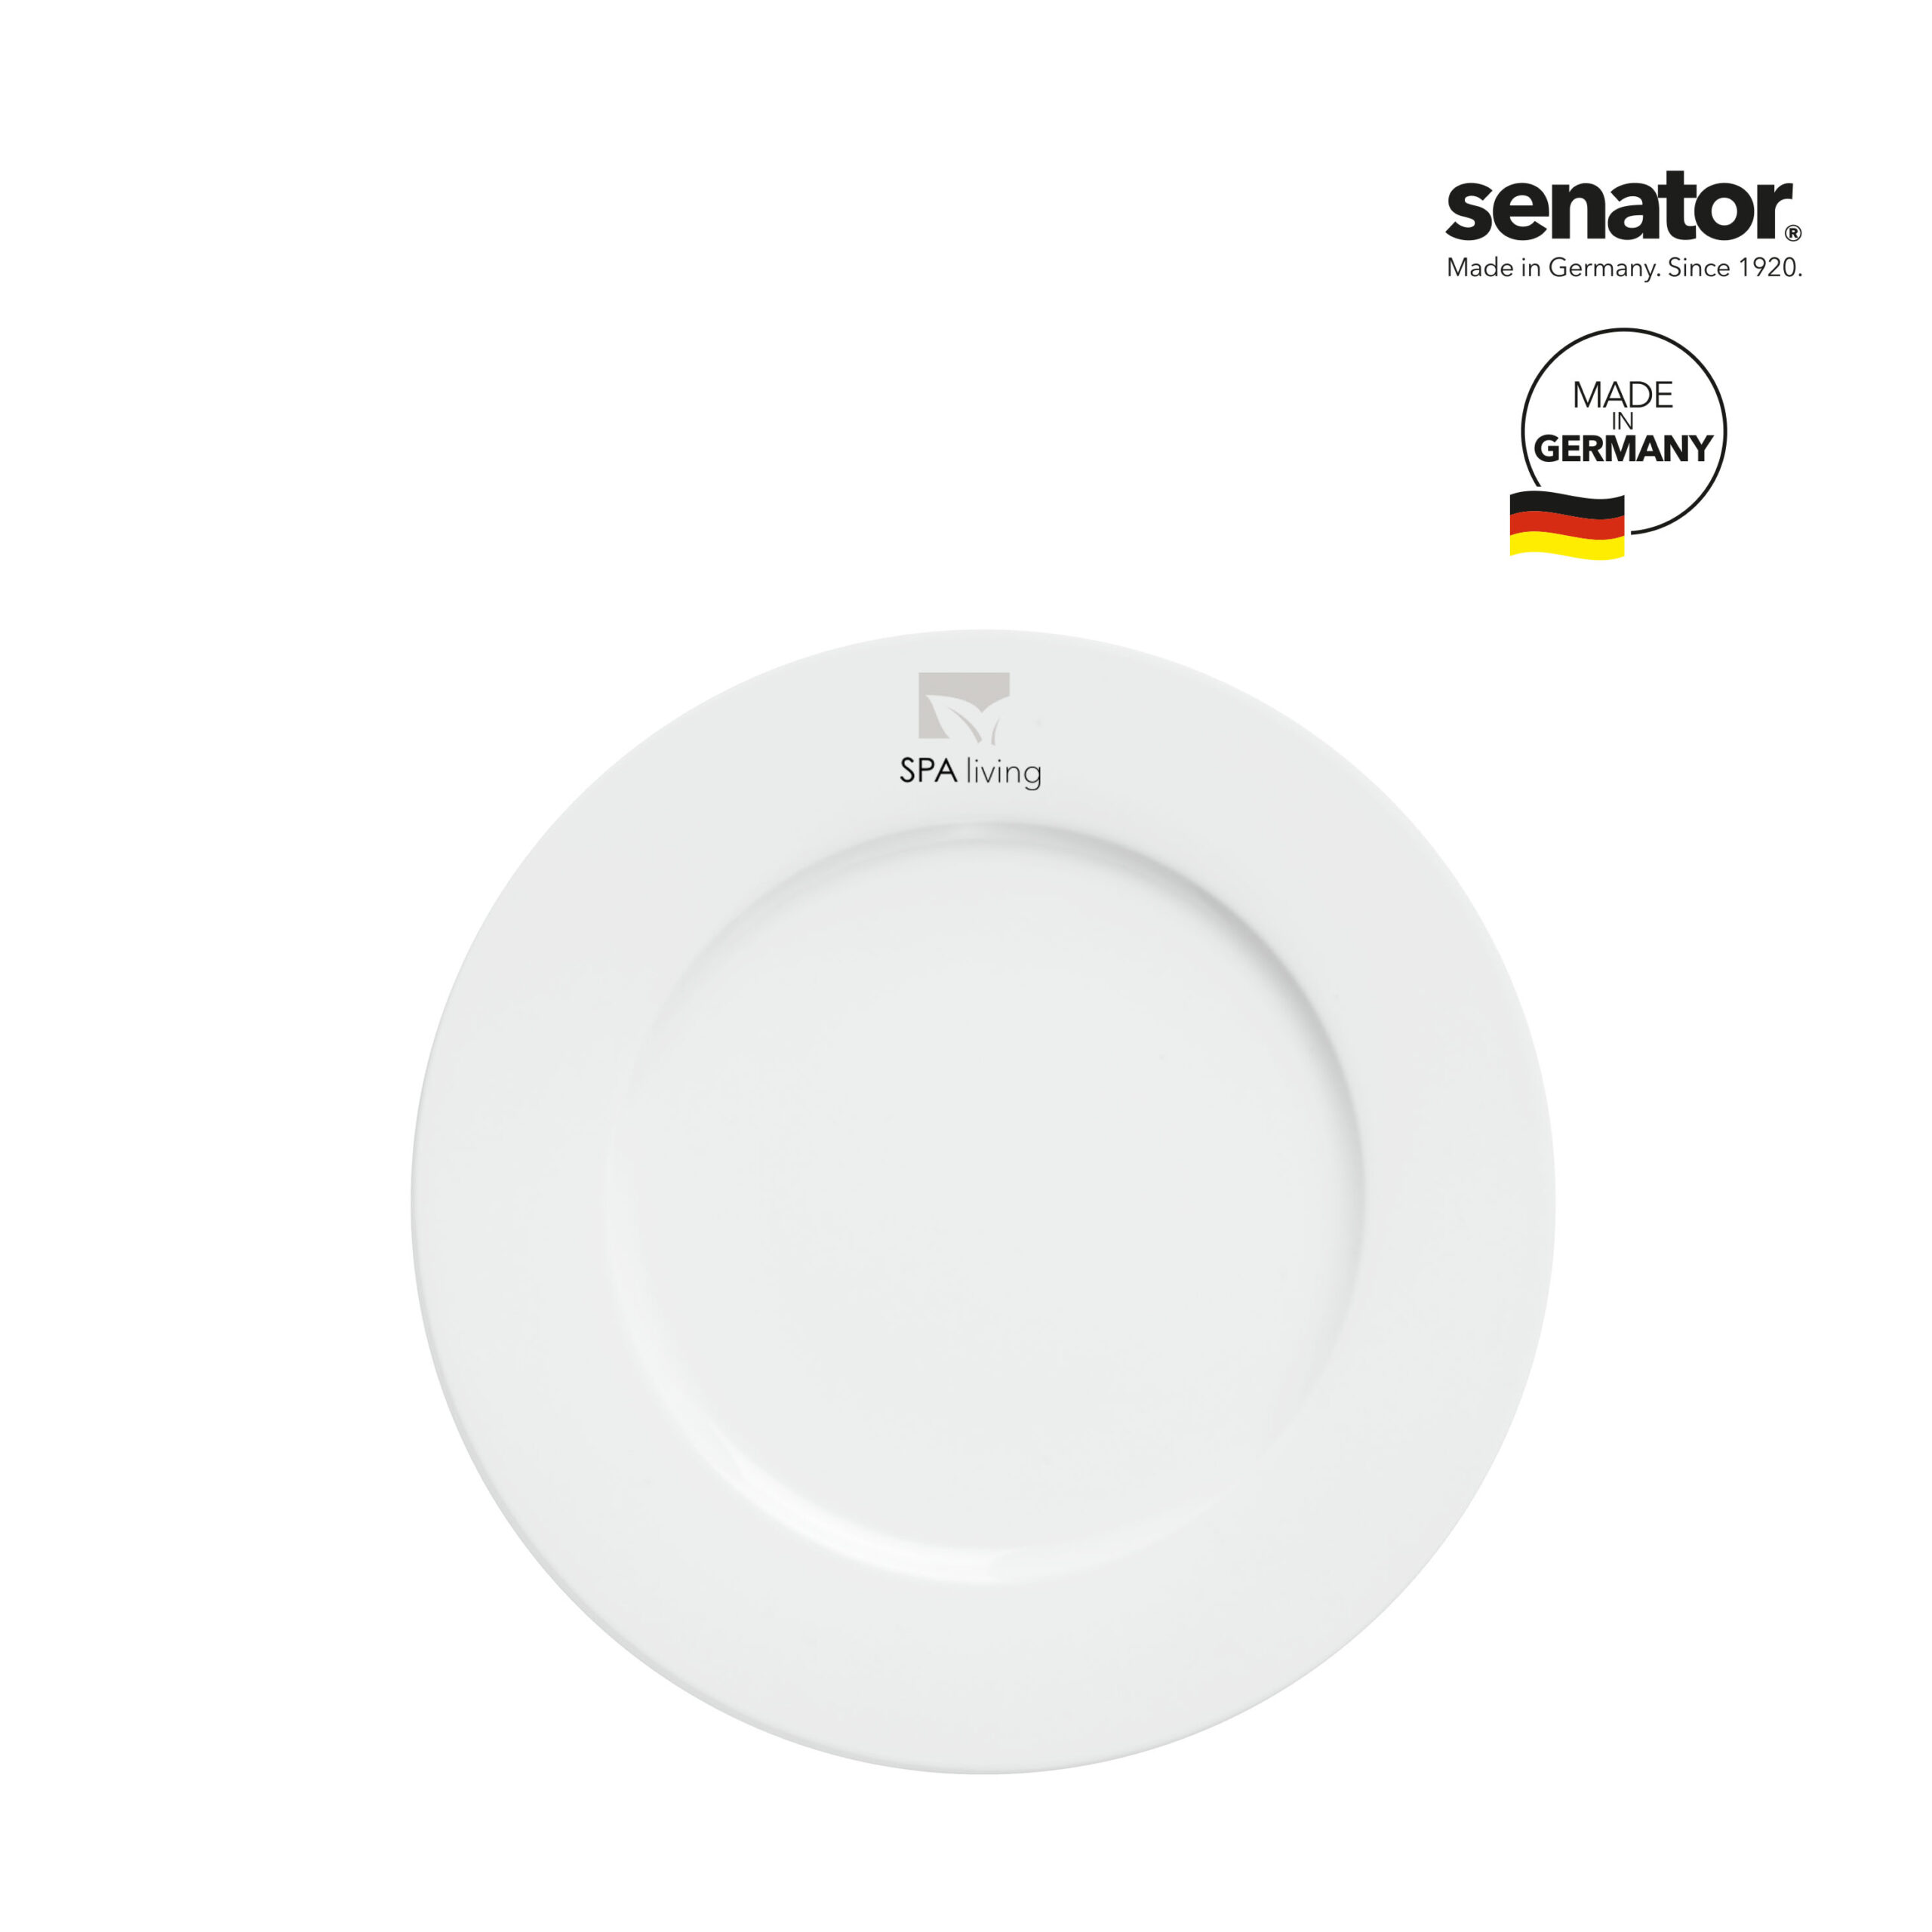 0966-senator-fancy-plate-2-p